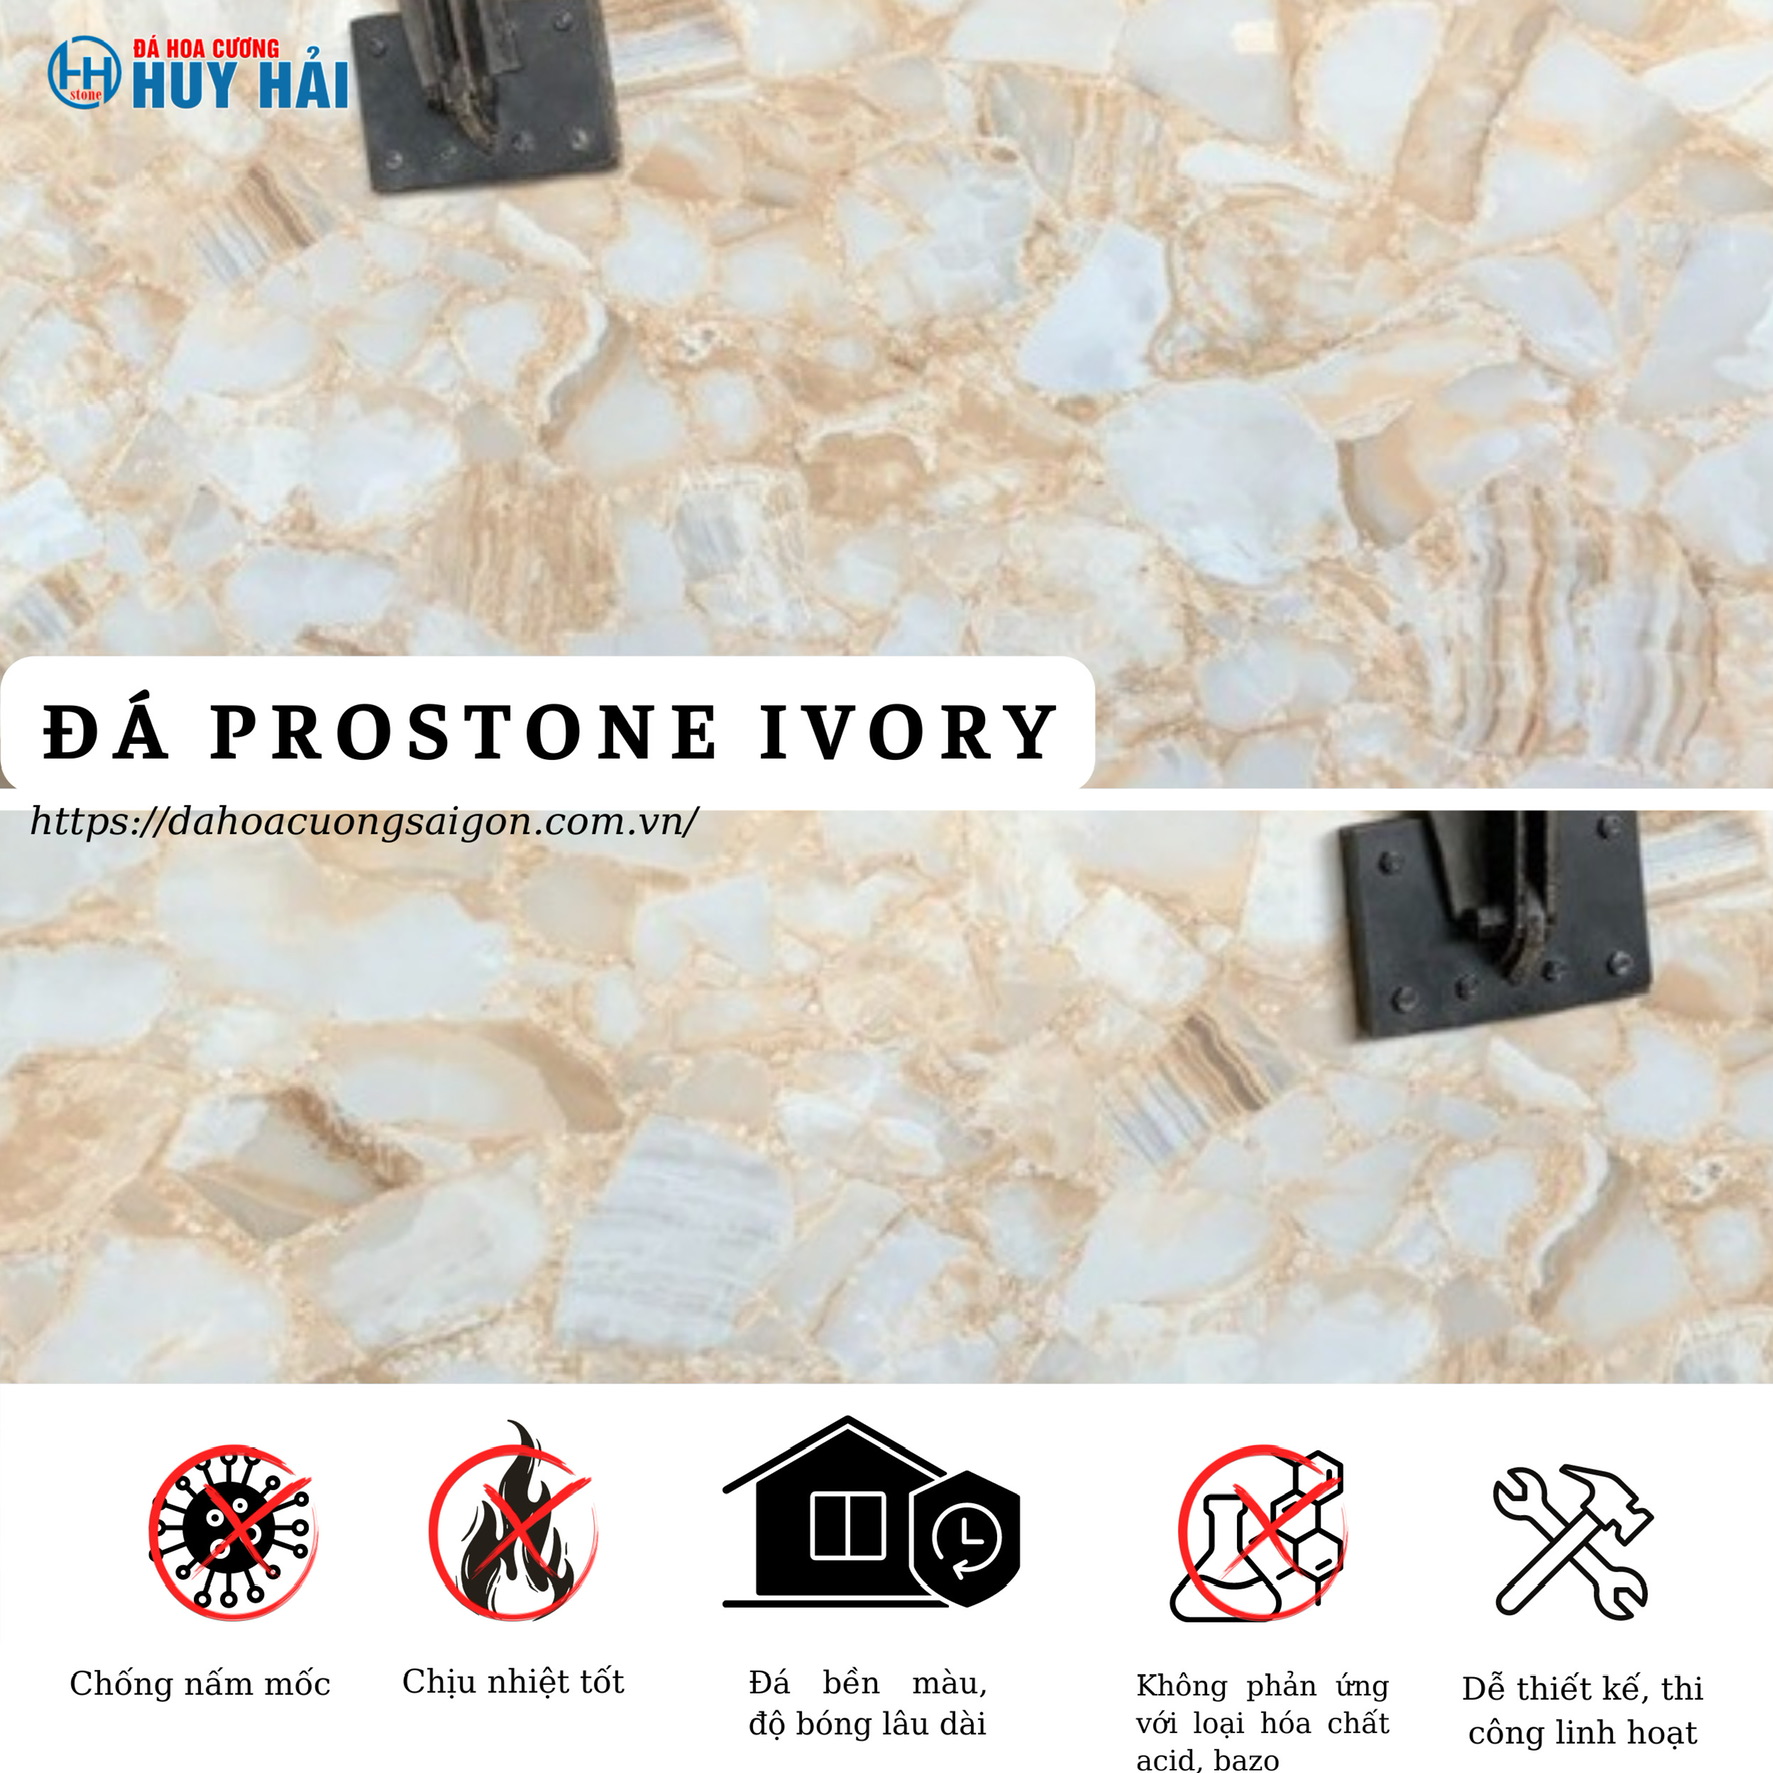 Đặc điểm nổi bật của đá Prostone Ivory